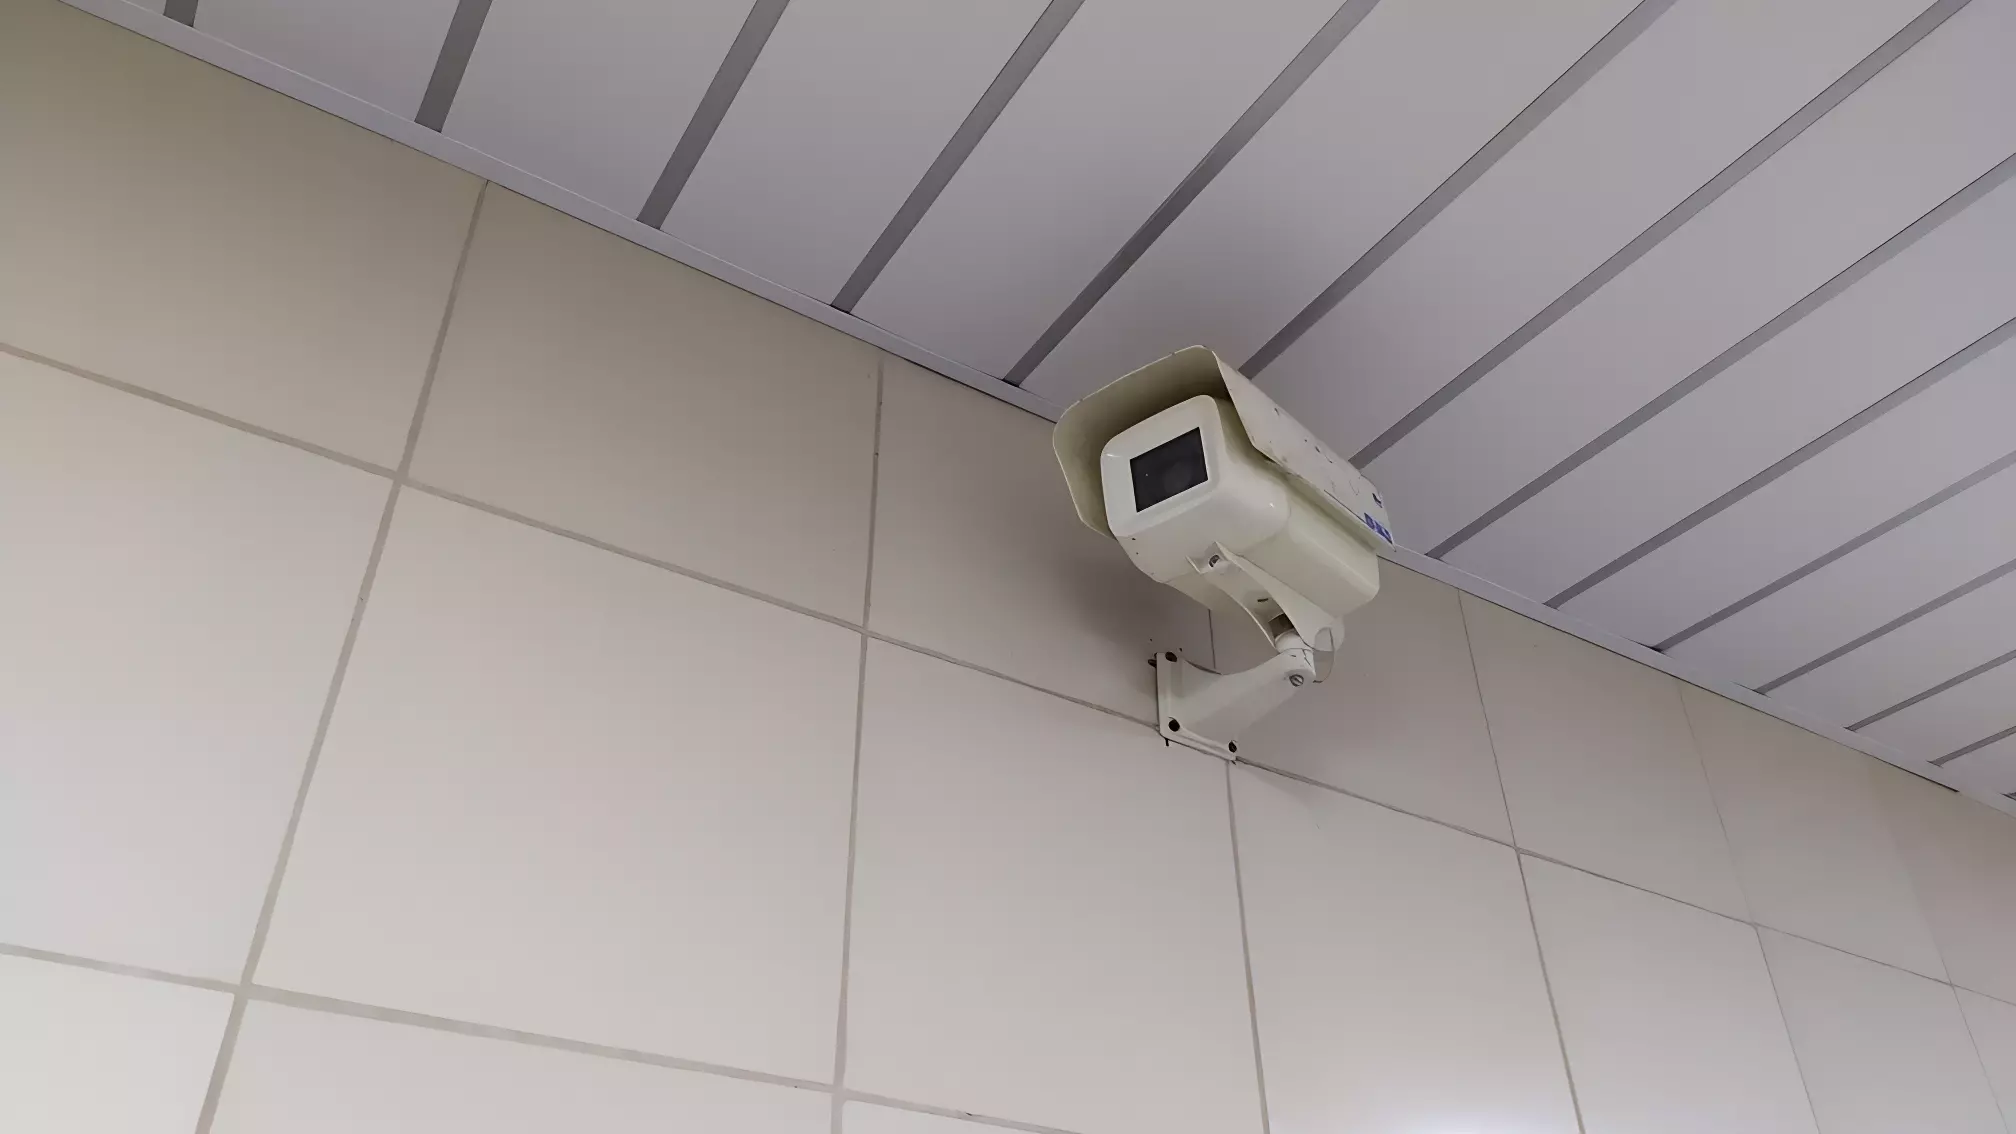 Муляж камеры обнаружили в туалете на избирательном участке